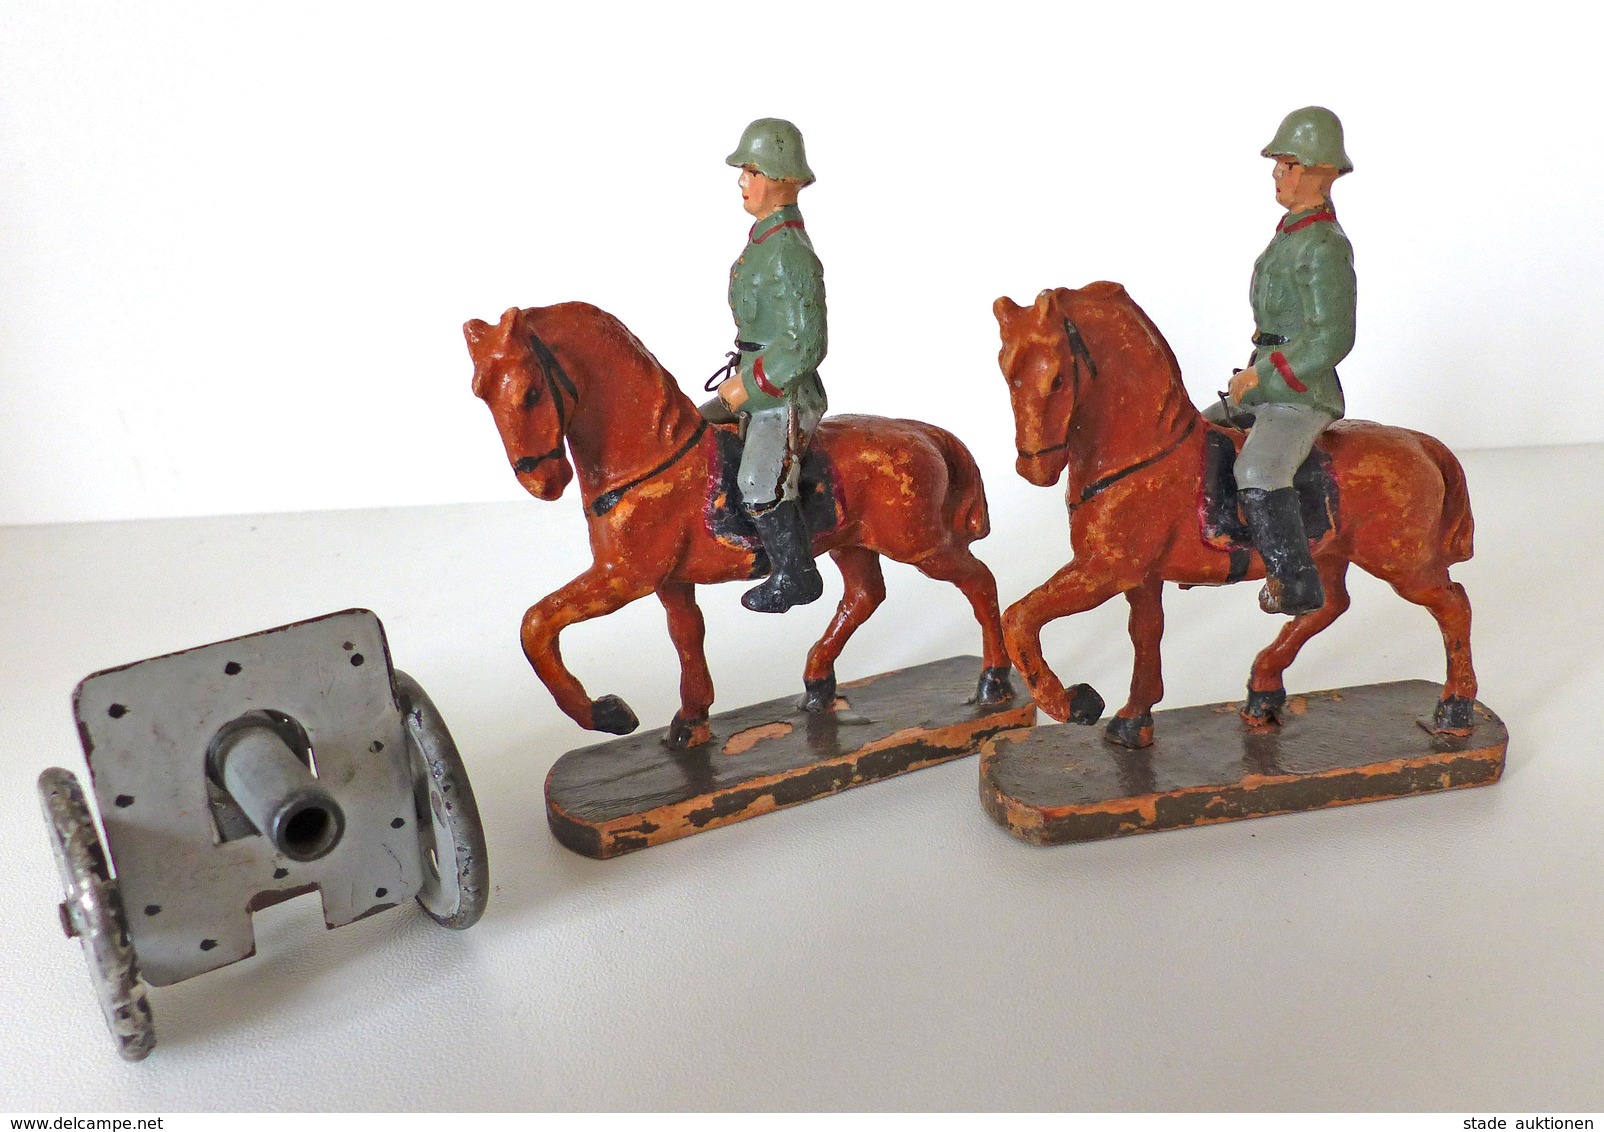 Zwischenkriegszeit Wehrmacht Lineol Figuren Kavalerie 2 Reiter 1 Geschütz Bespielt I-II (altersbedingte Gebrauchsspuren) - History